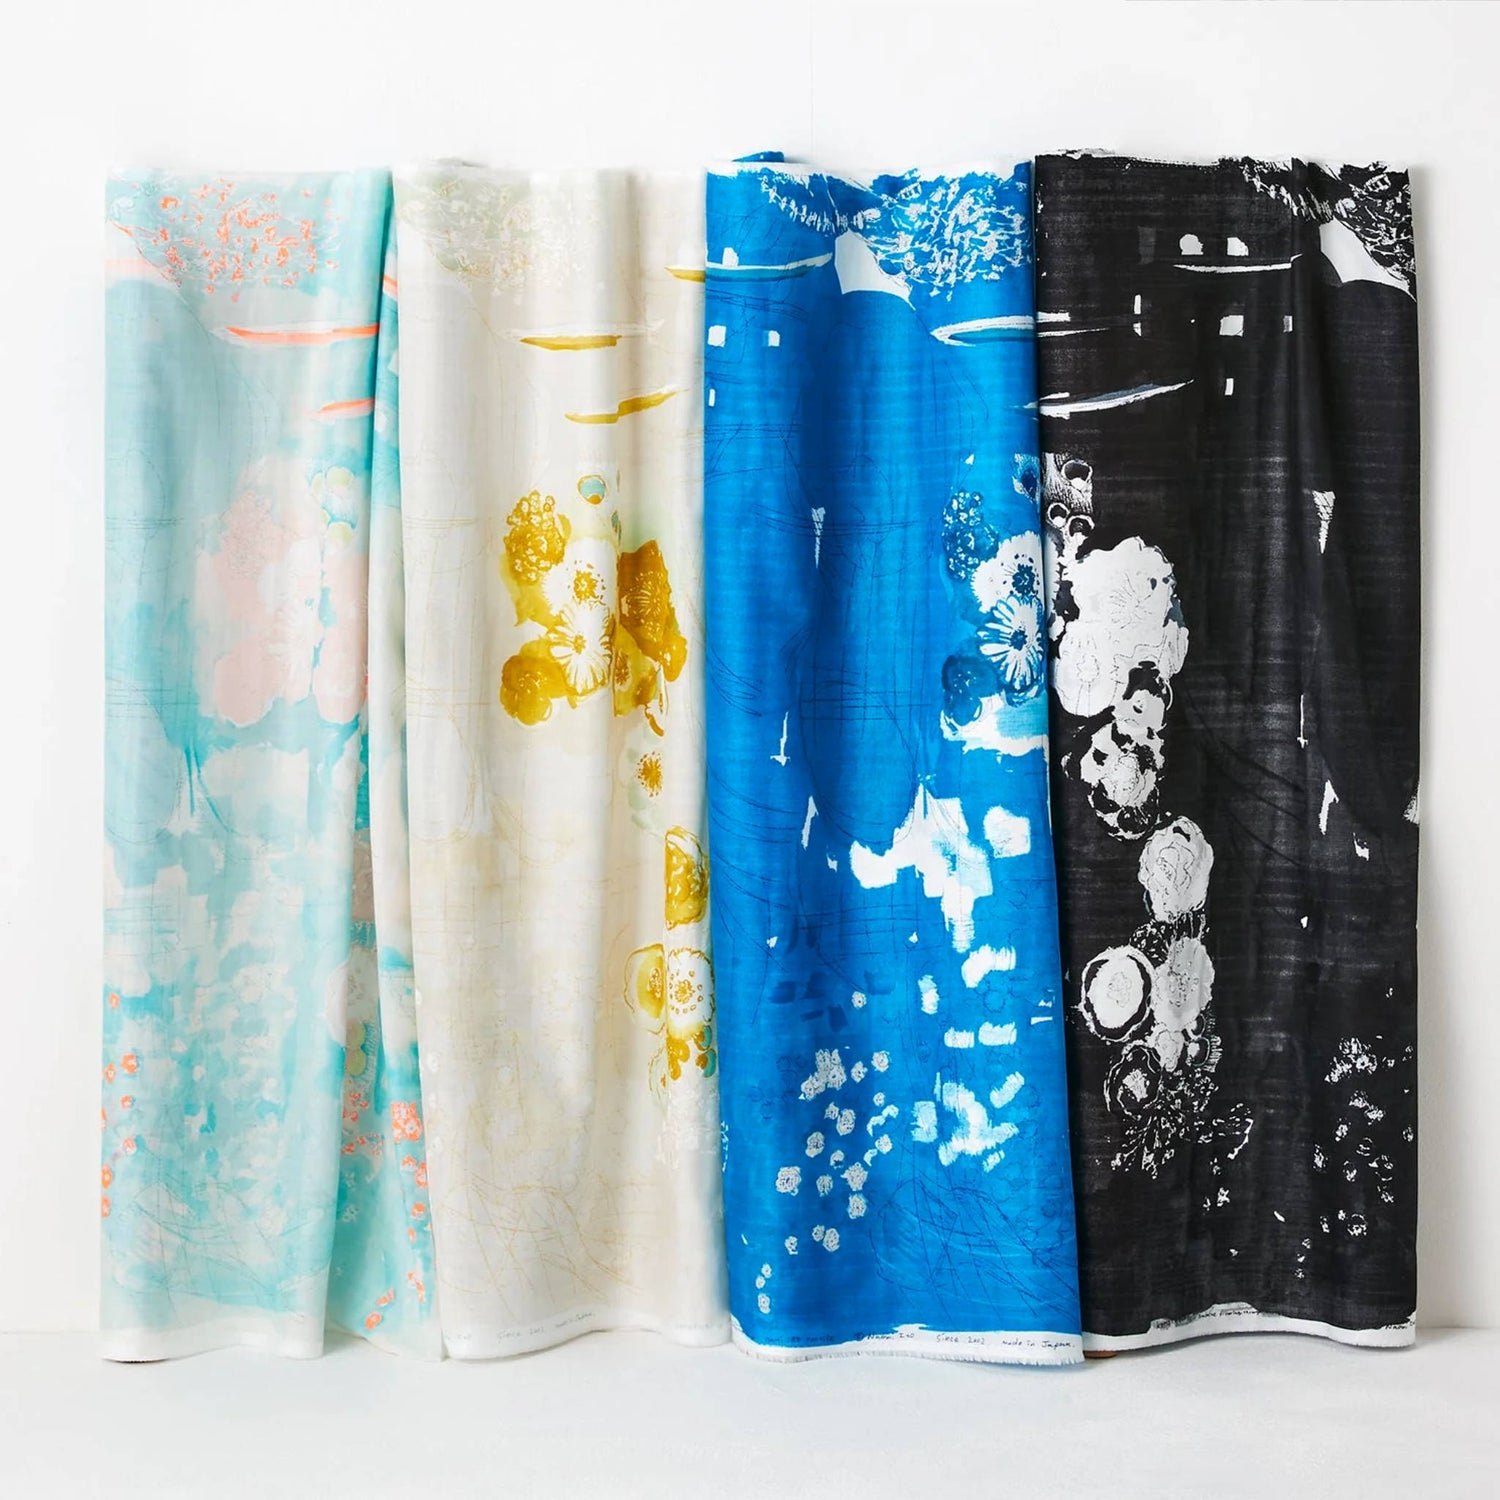 Moderne japanische Stoffe von Naomi Ito, Nani Iro Textile in sanften Farben